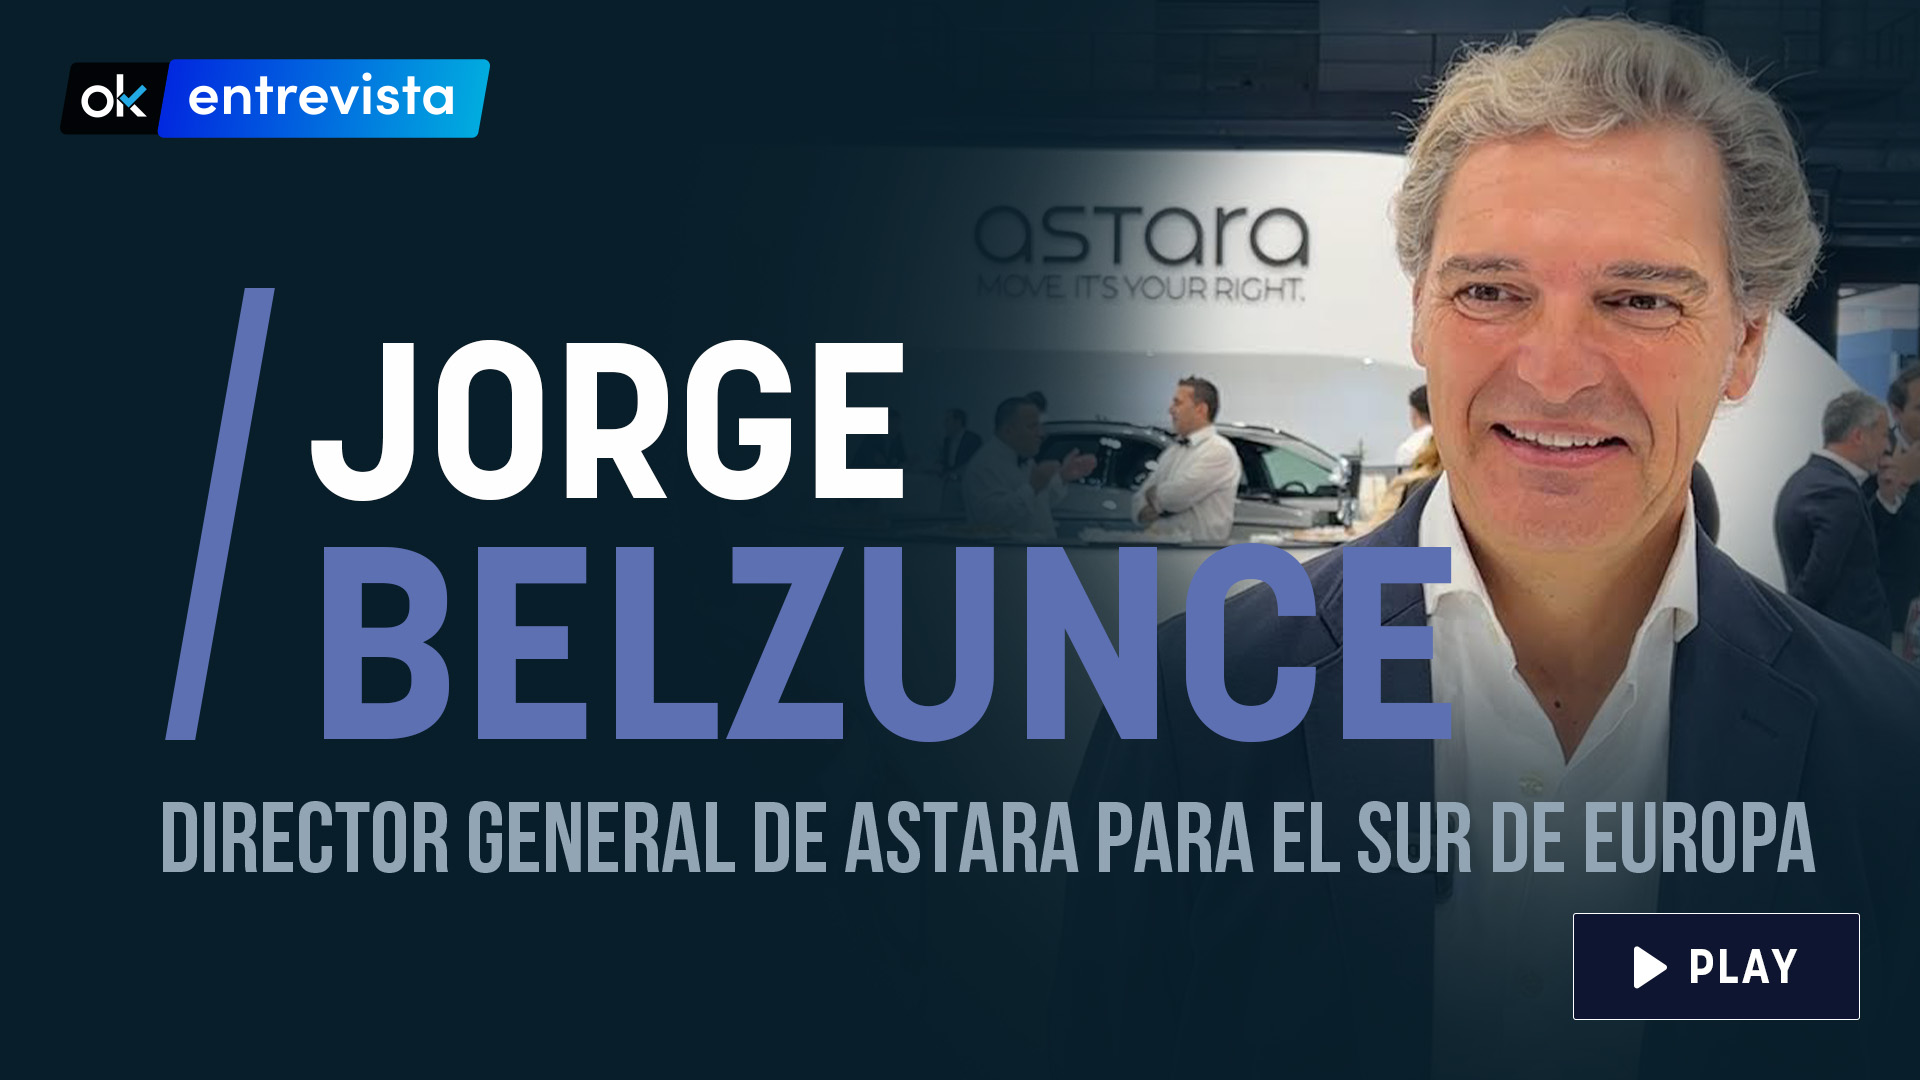 Jorge Belzunce, director general de Astara para el sur de Europa